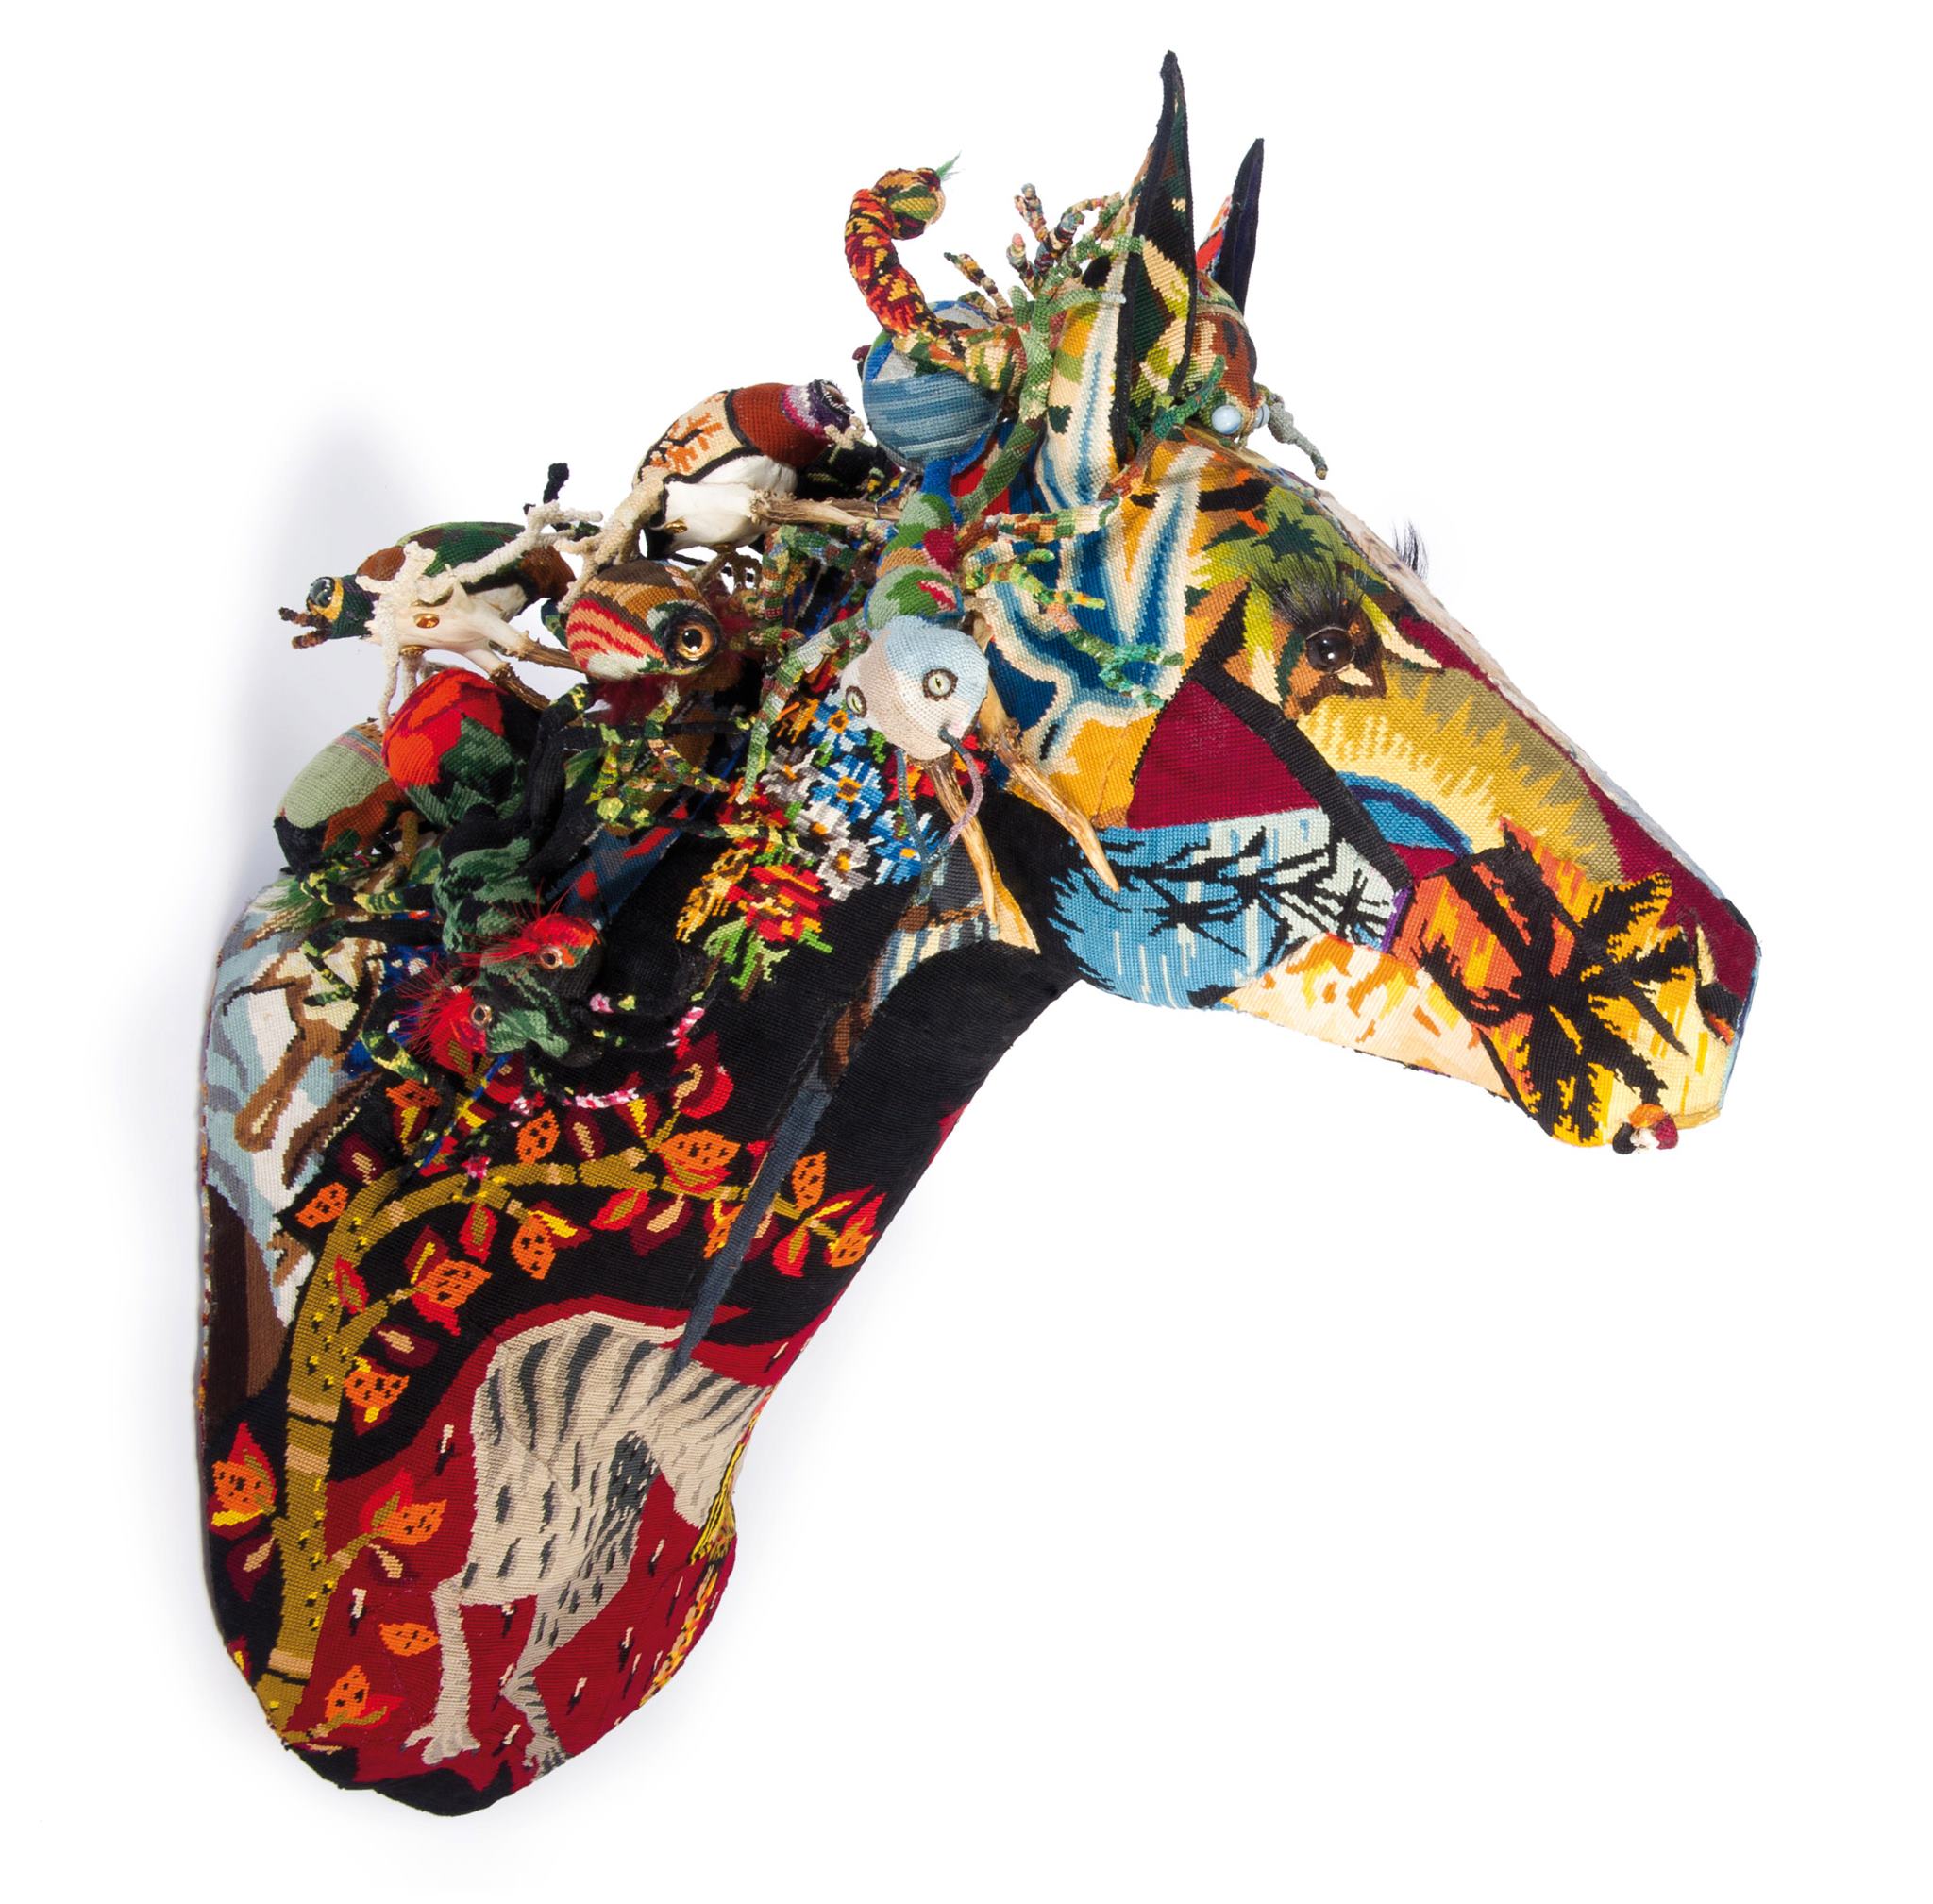 Frédérique Morrel – horse sculptures tapestries